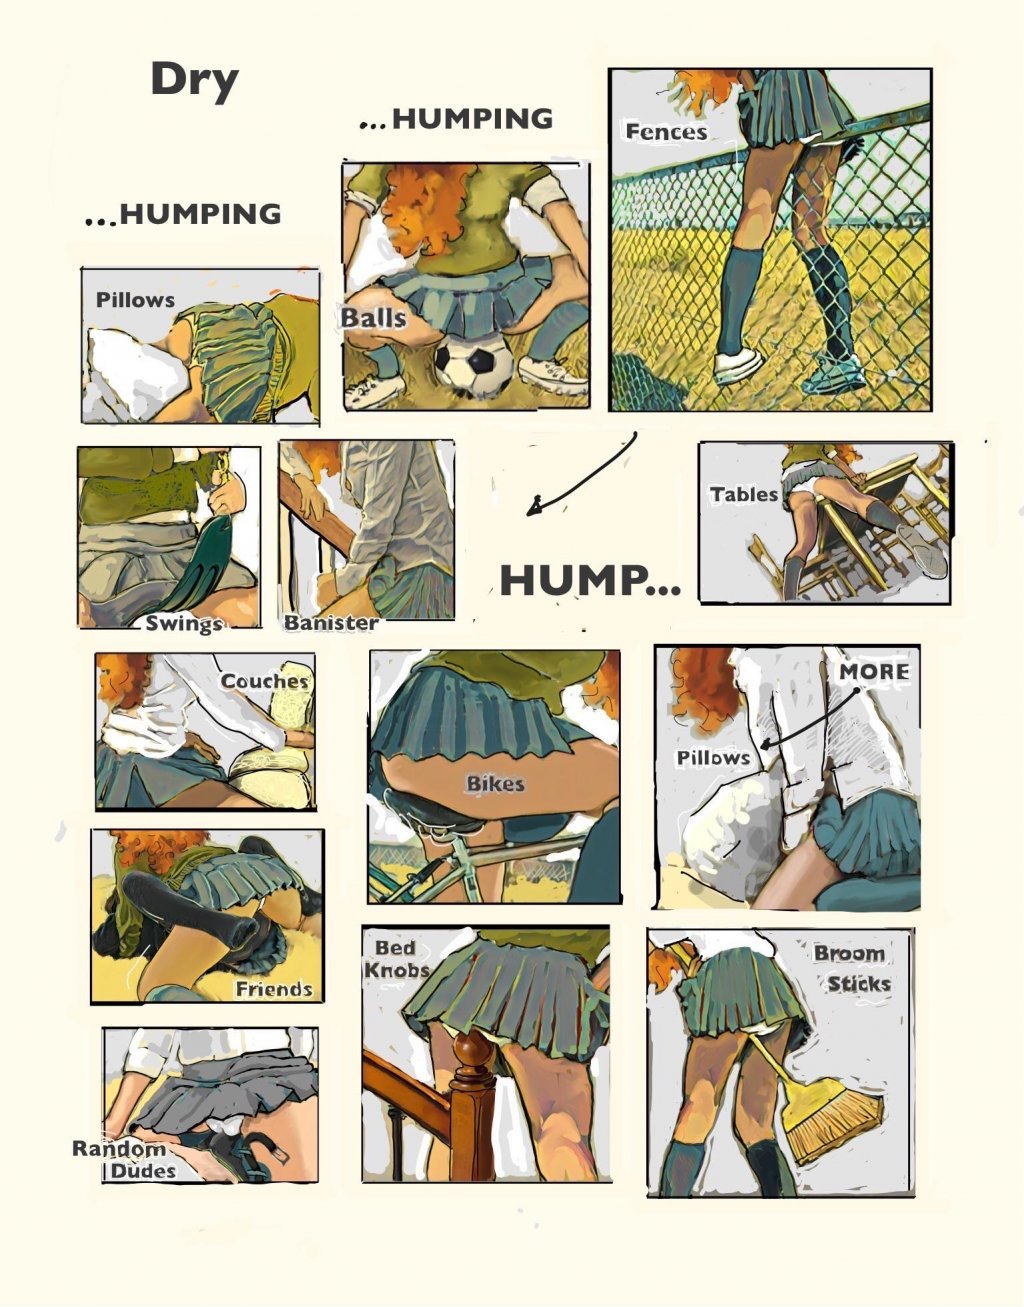 Dry humping porn comic